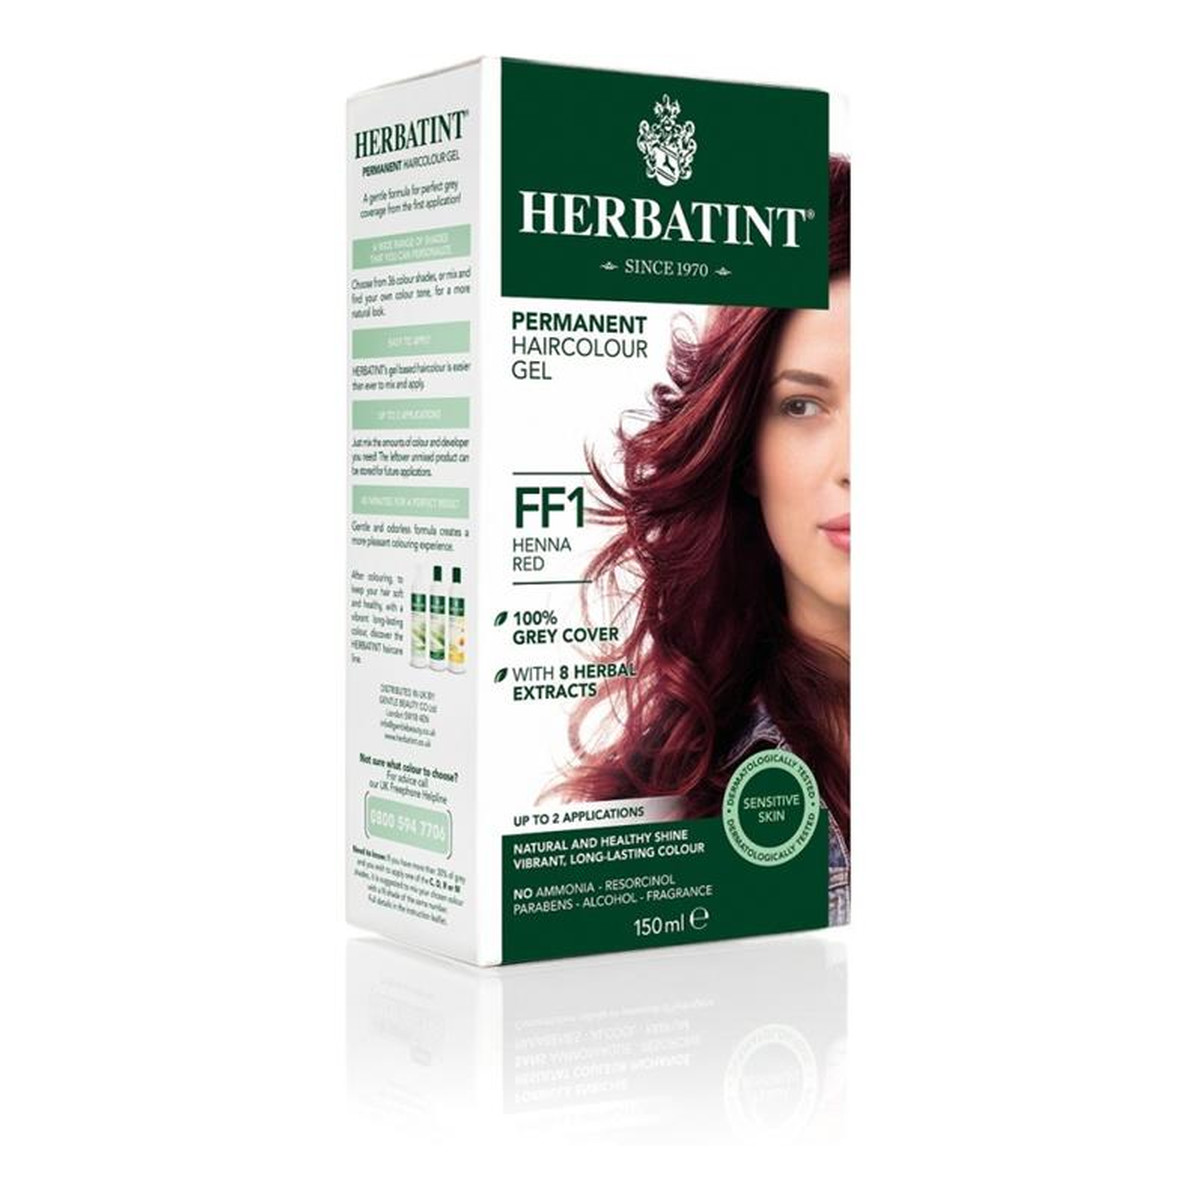 Herbatint Trwała Farba Do Włosów W Żelu 150ml